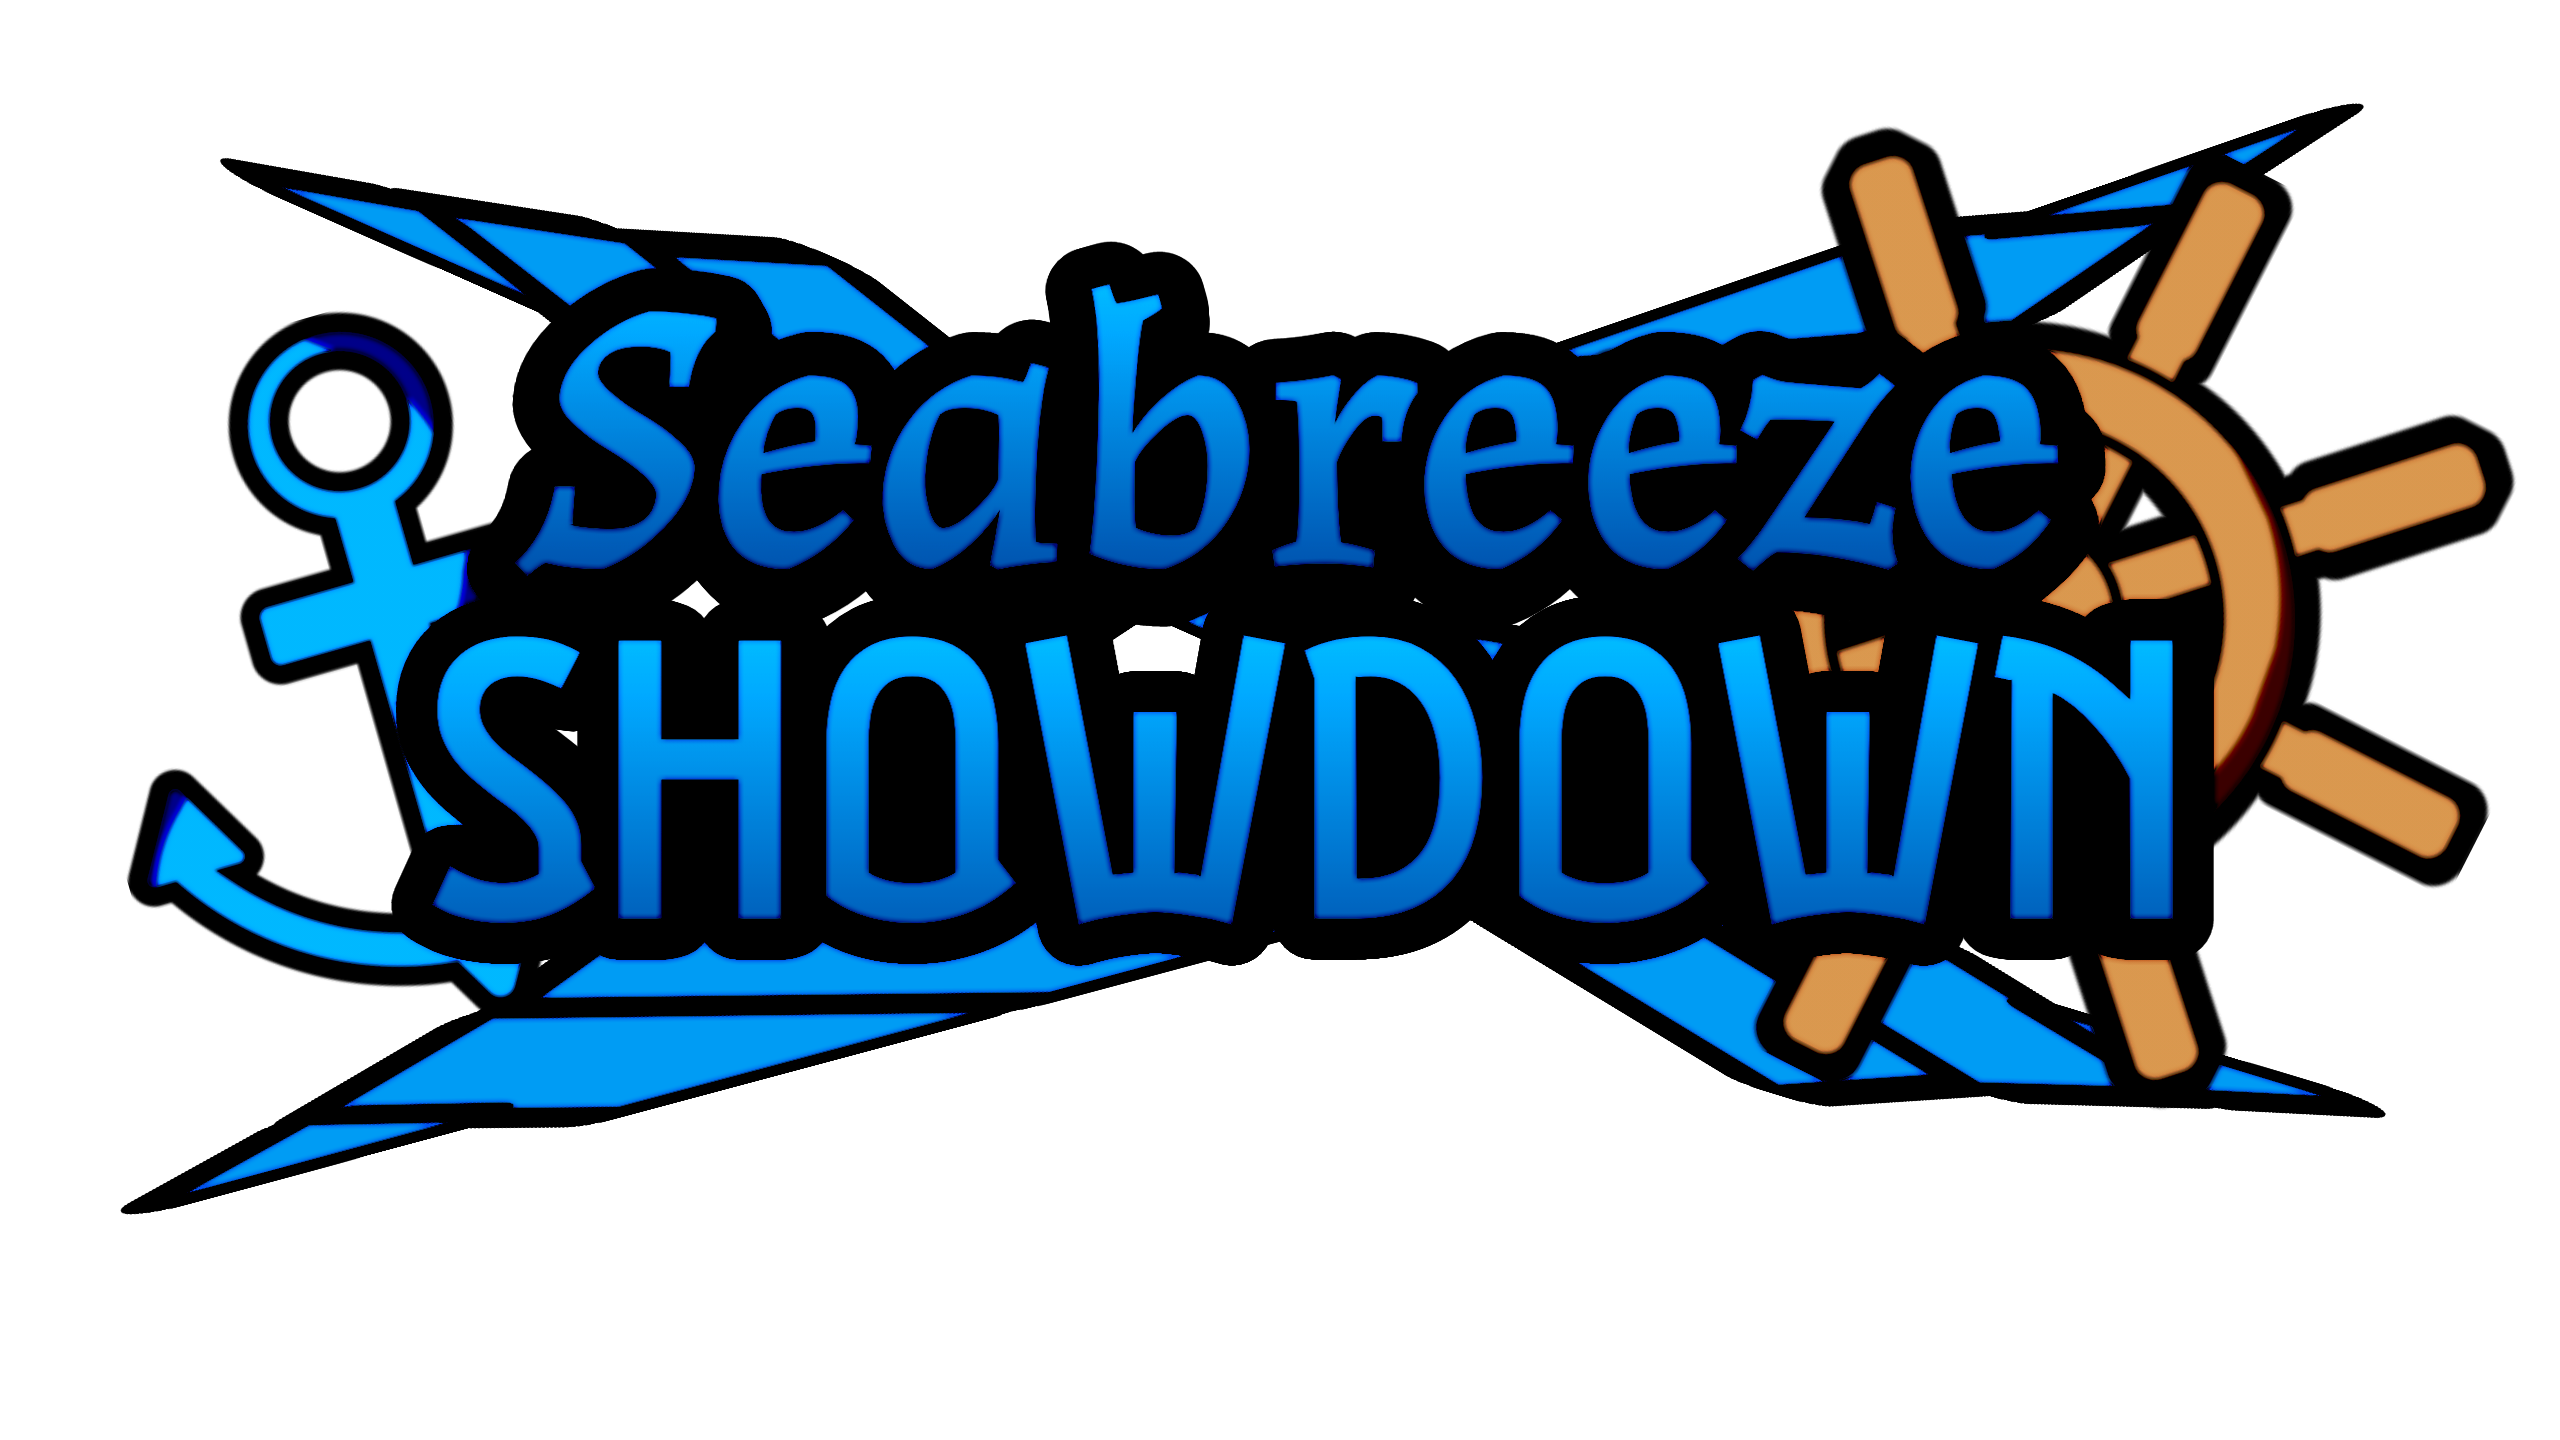 Seabreeze Showdown